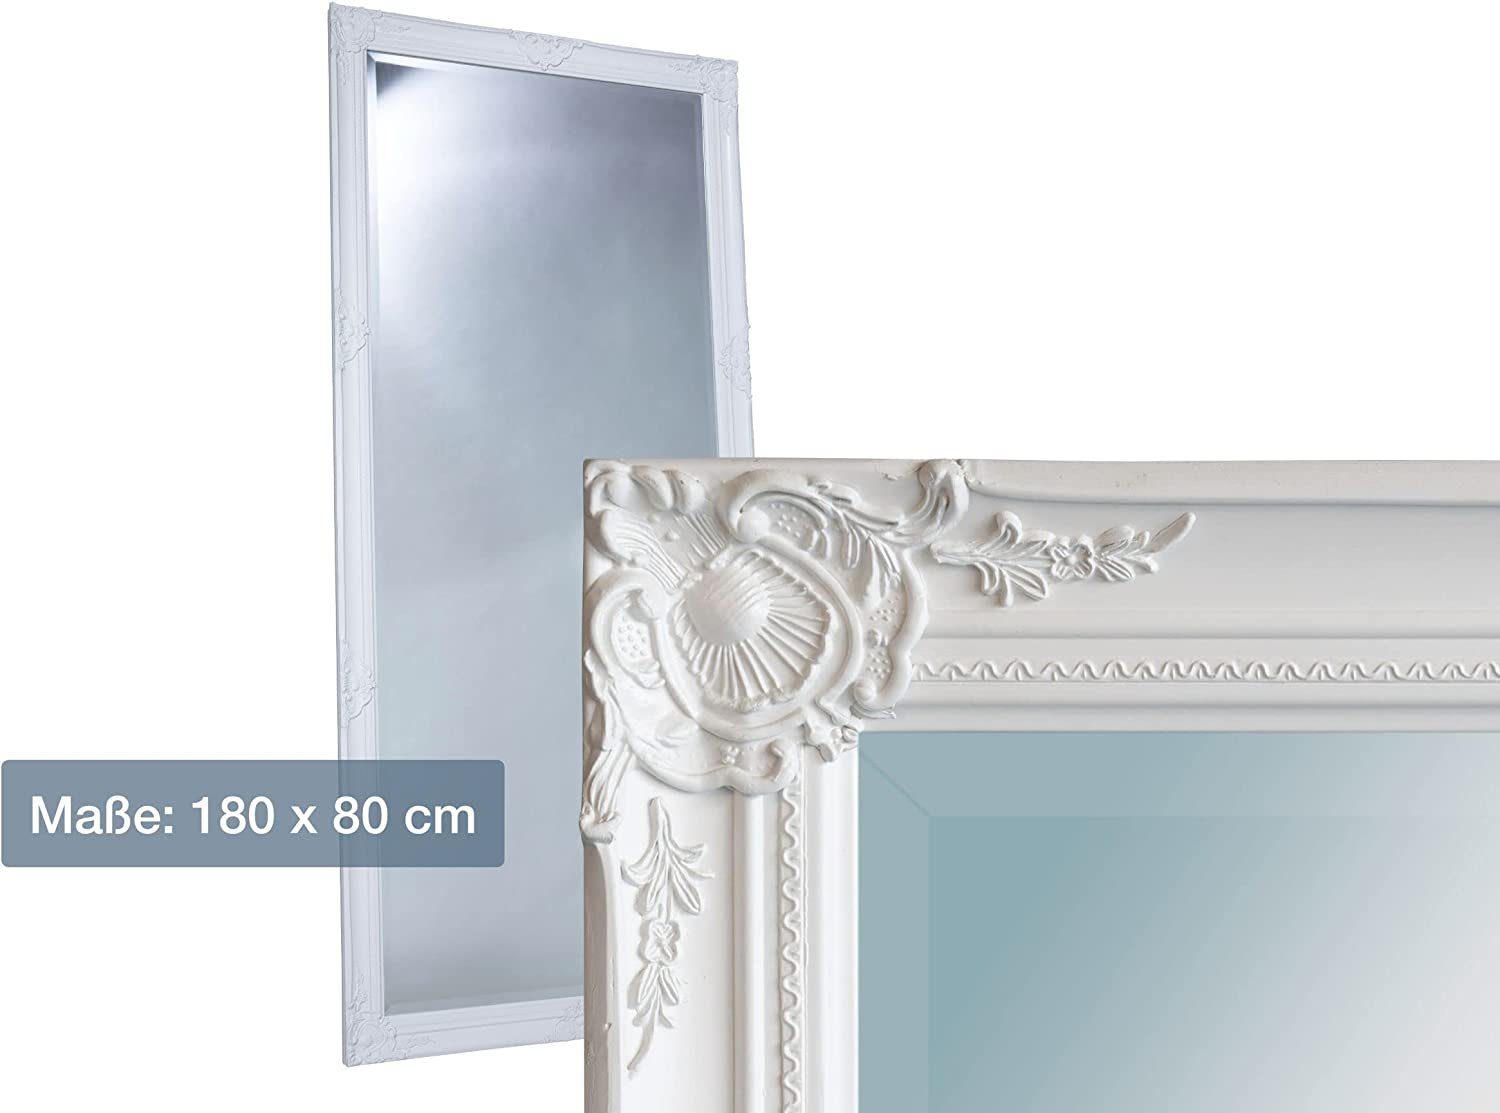 Weiß 80 180 mit Spiegelfläche x Wandspiegel dasmöbelwerk Wandspiegel edlem Home LC cm, Facettenschliff